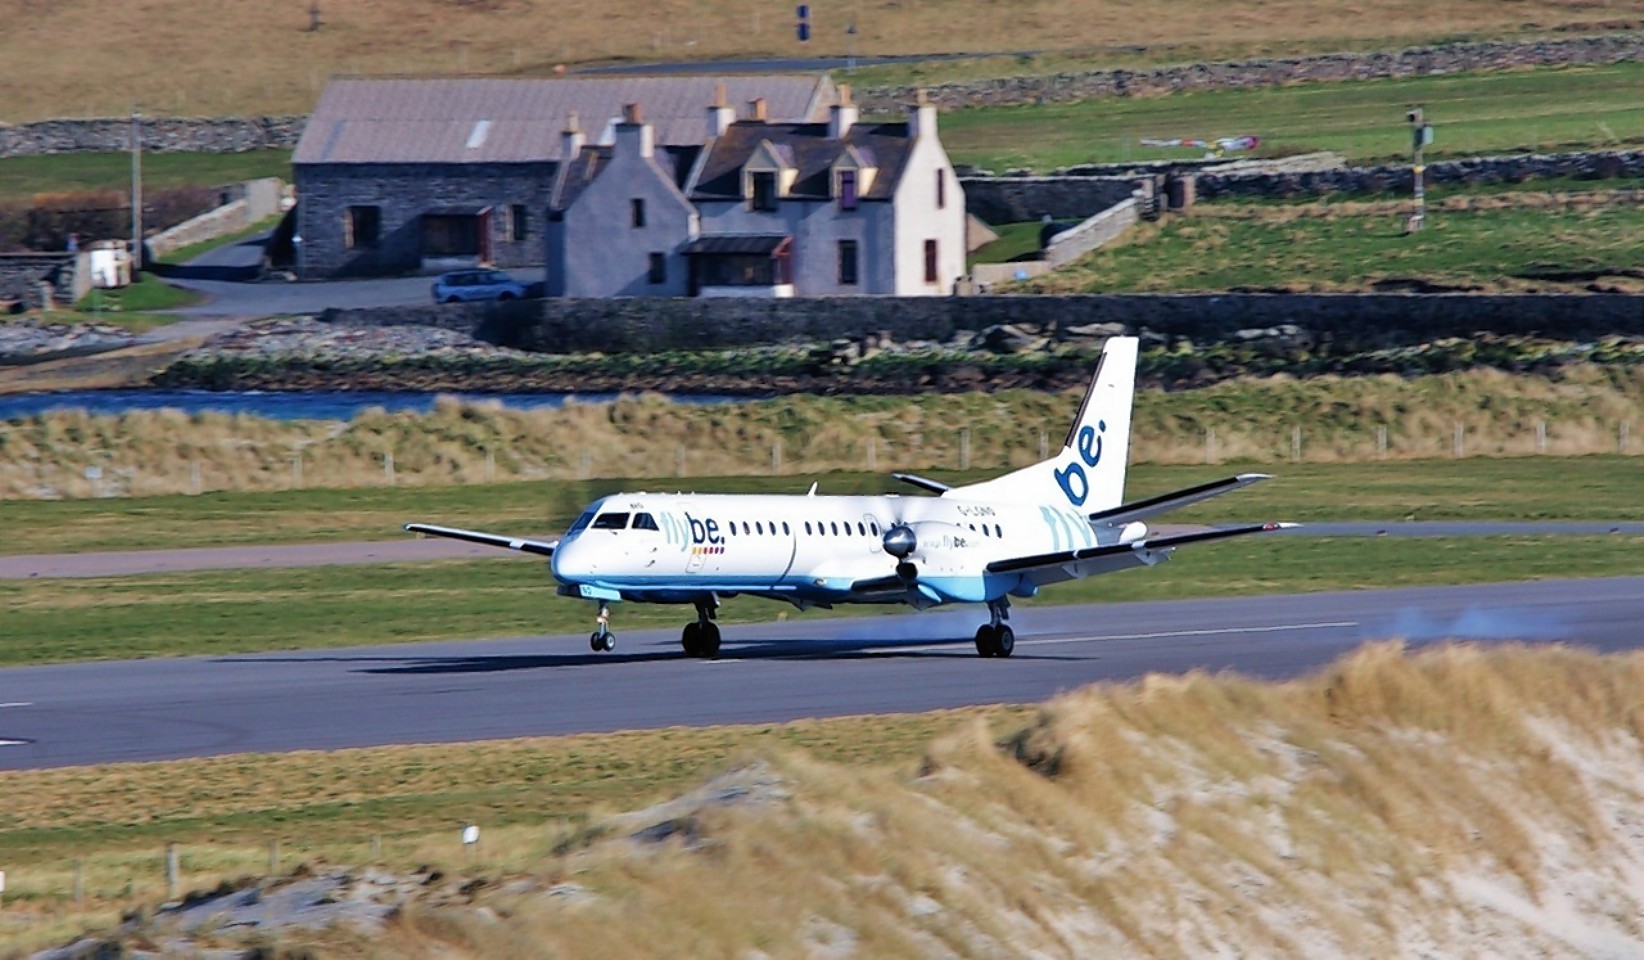 A Flybe/Loganair aircraft landing at Shetland's Sumburgh airport